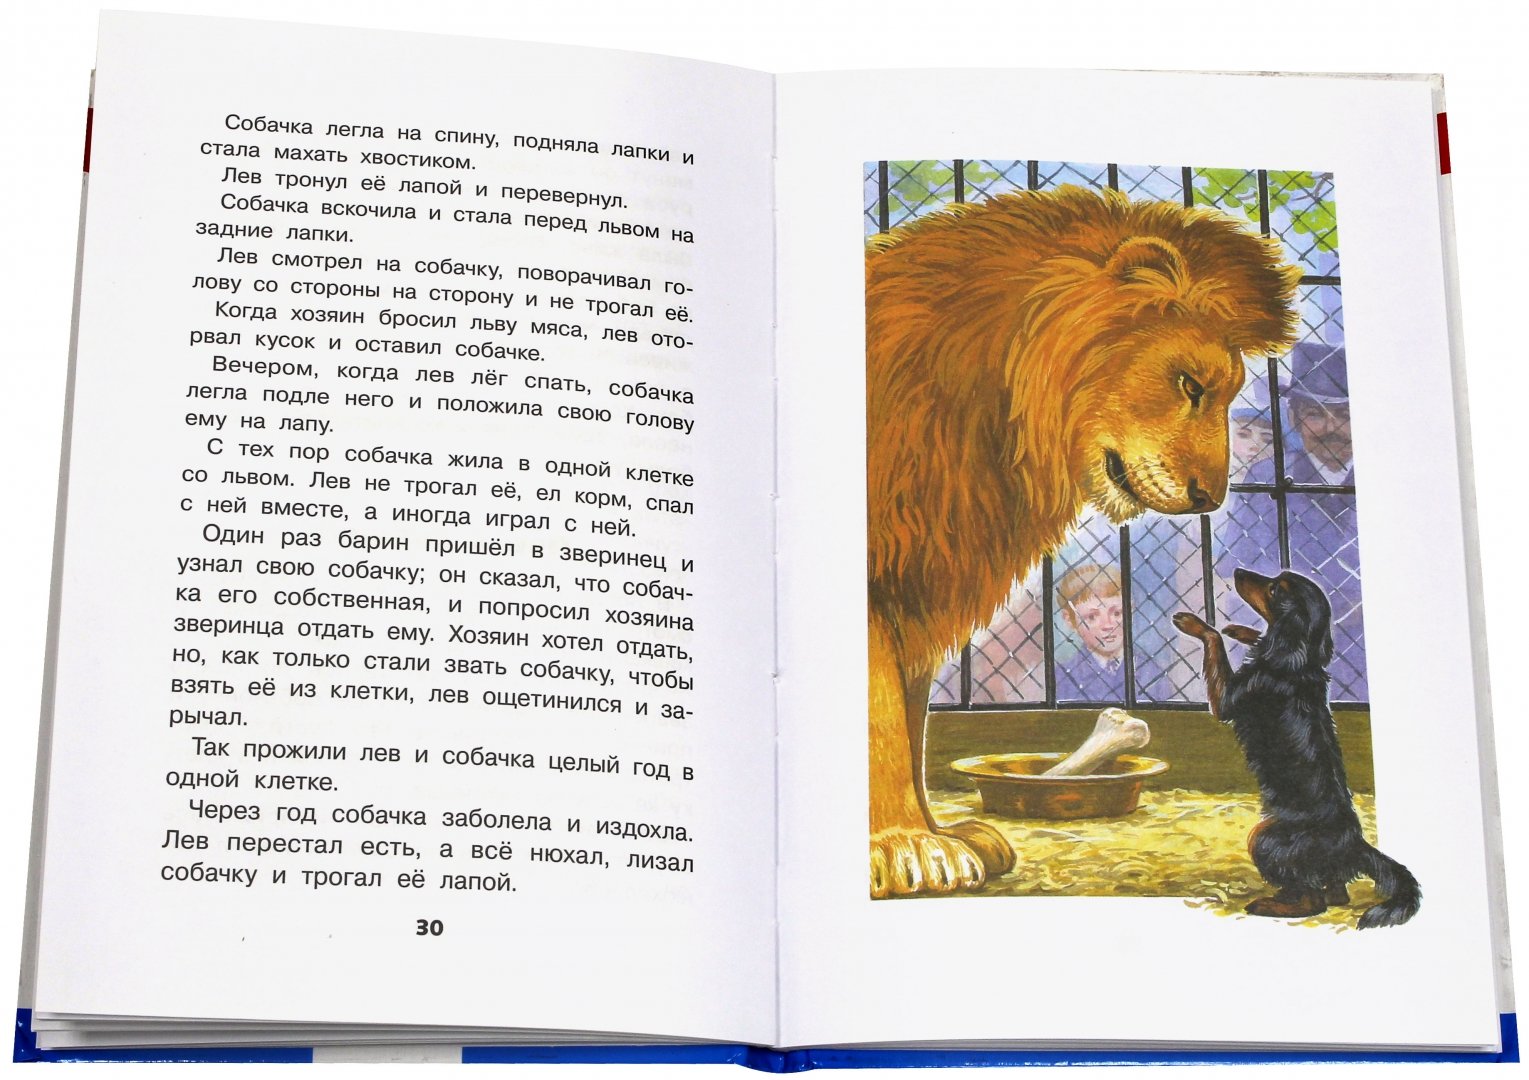 Читать сказку сказки про шакала и льва - арабская сказка, онлайн бесплатно с иллюстрациями.